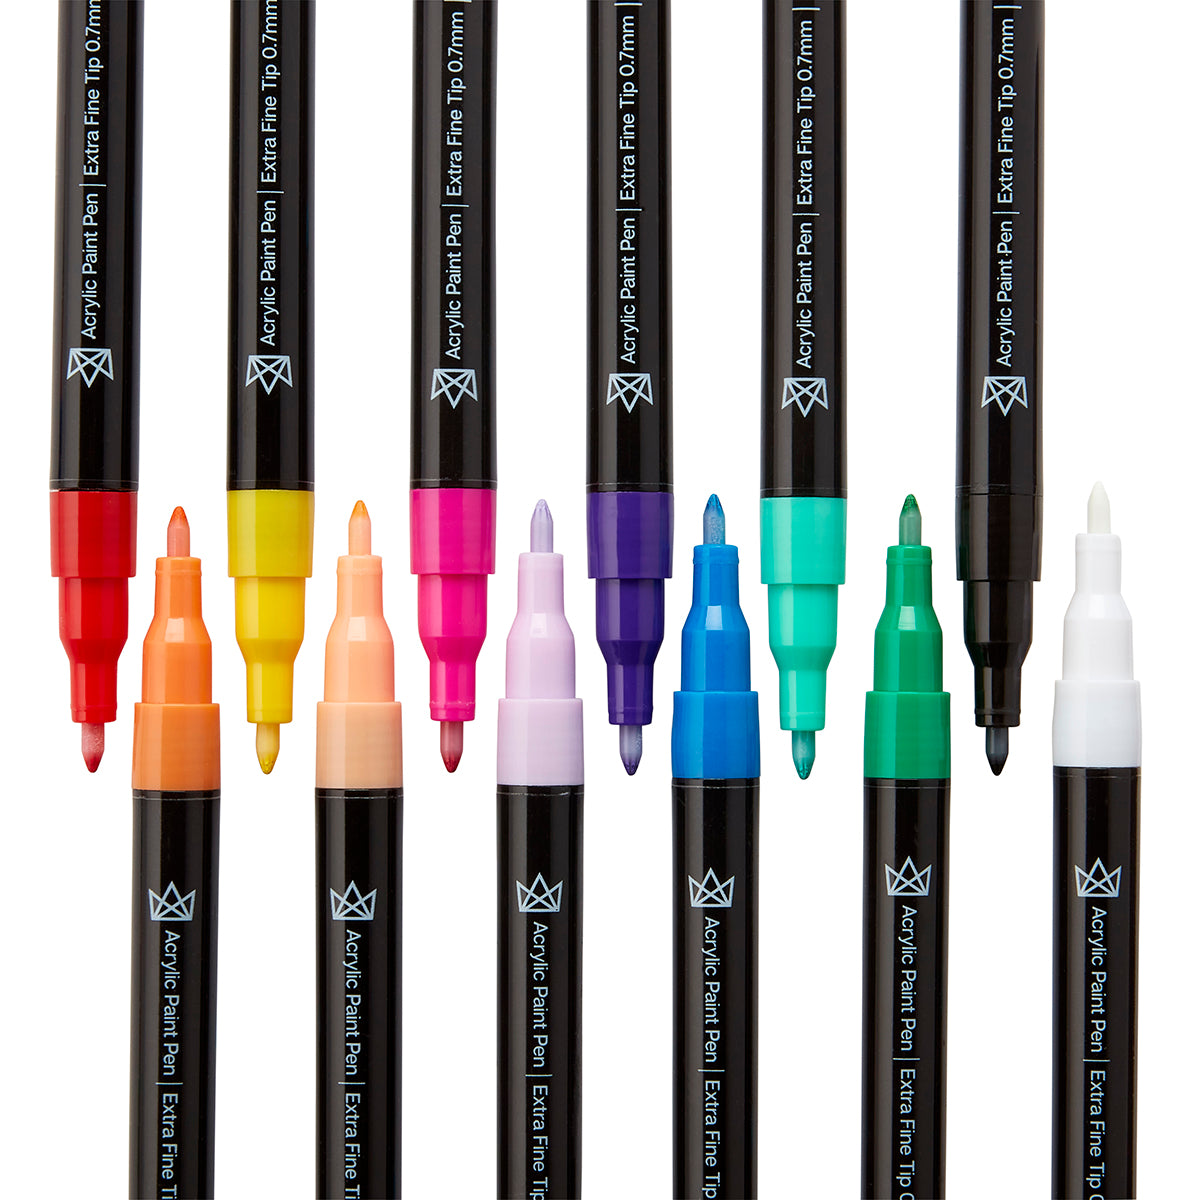 KINGART� Studio Permanent Fine Tip Markers, Set of 24 Unique & Vivid Colors